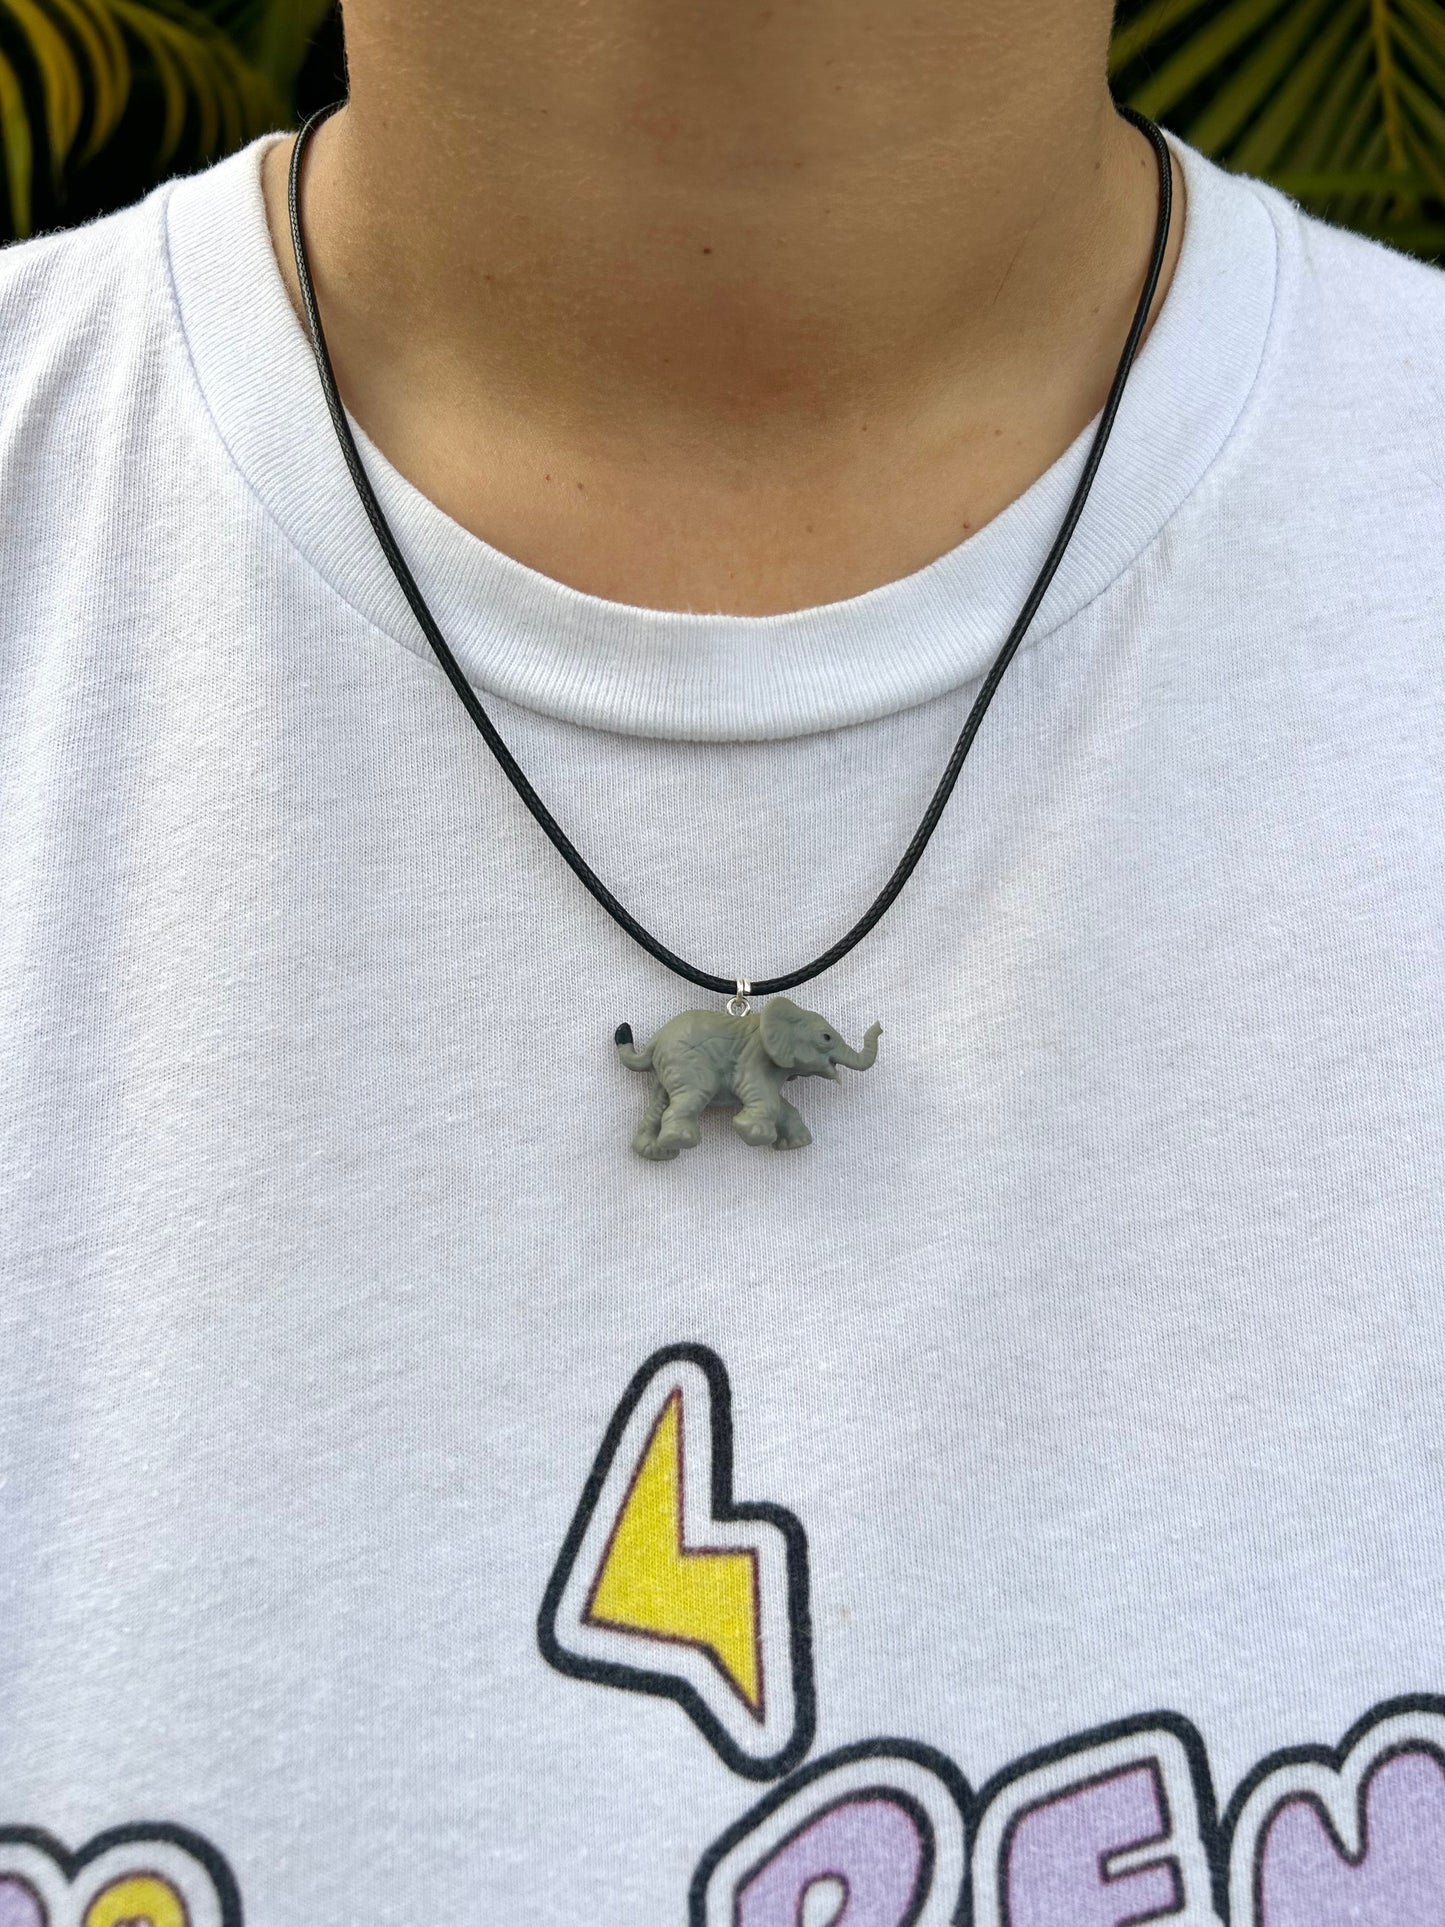 Mini Elephant Necklace